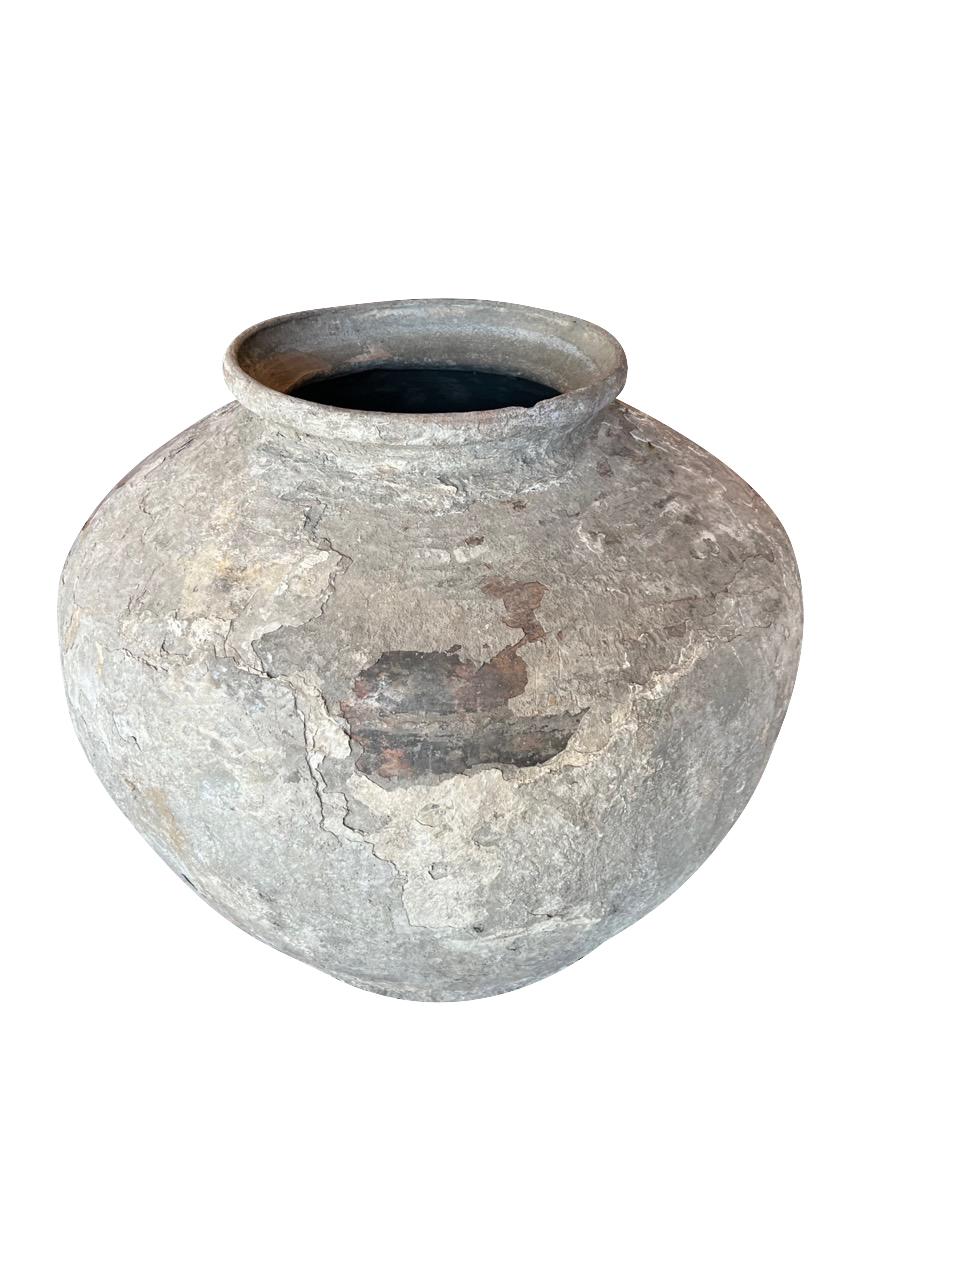 Grand vase à eau en terre cuite de Bornéo du XIXe siècle
Magnifique patine naturelle et vieillie.
L'altération par le temps révèle des couches de terre cuite.
Un navire similaire est également disponible G2535.
ARRIVÉE AVRIL